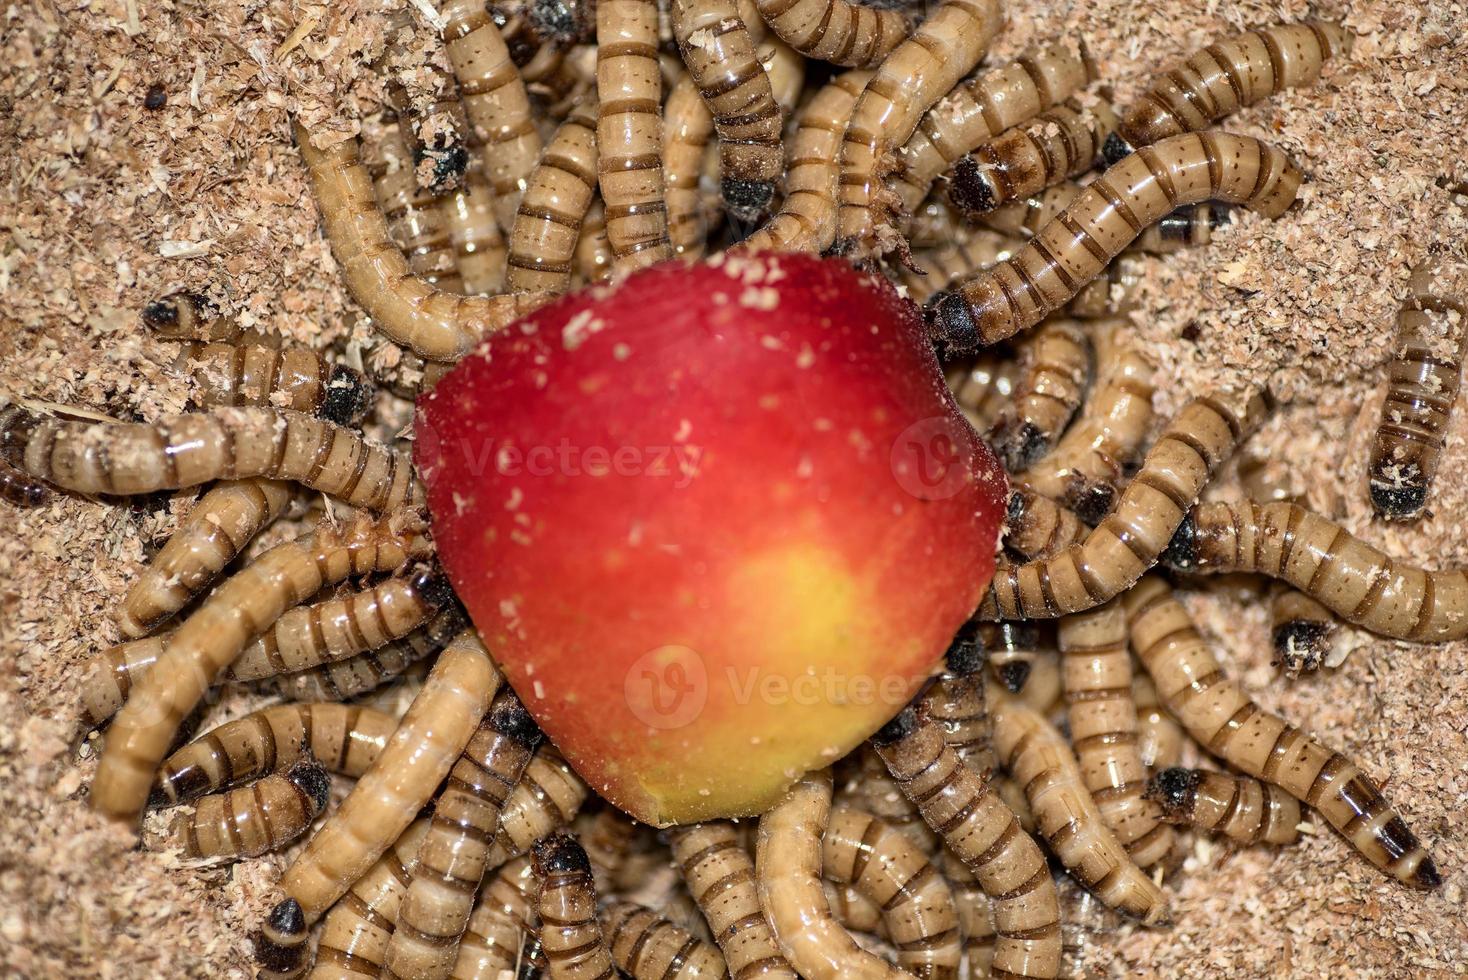 Zofobas-Larvenwürmer fressen einen roten Apfel foto